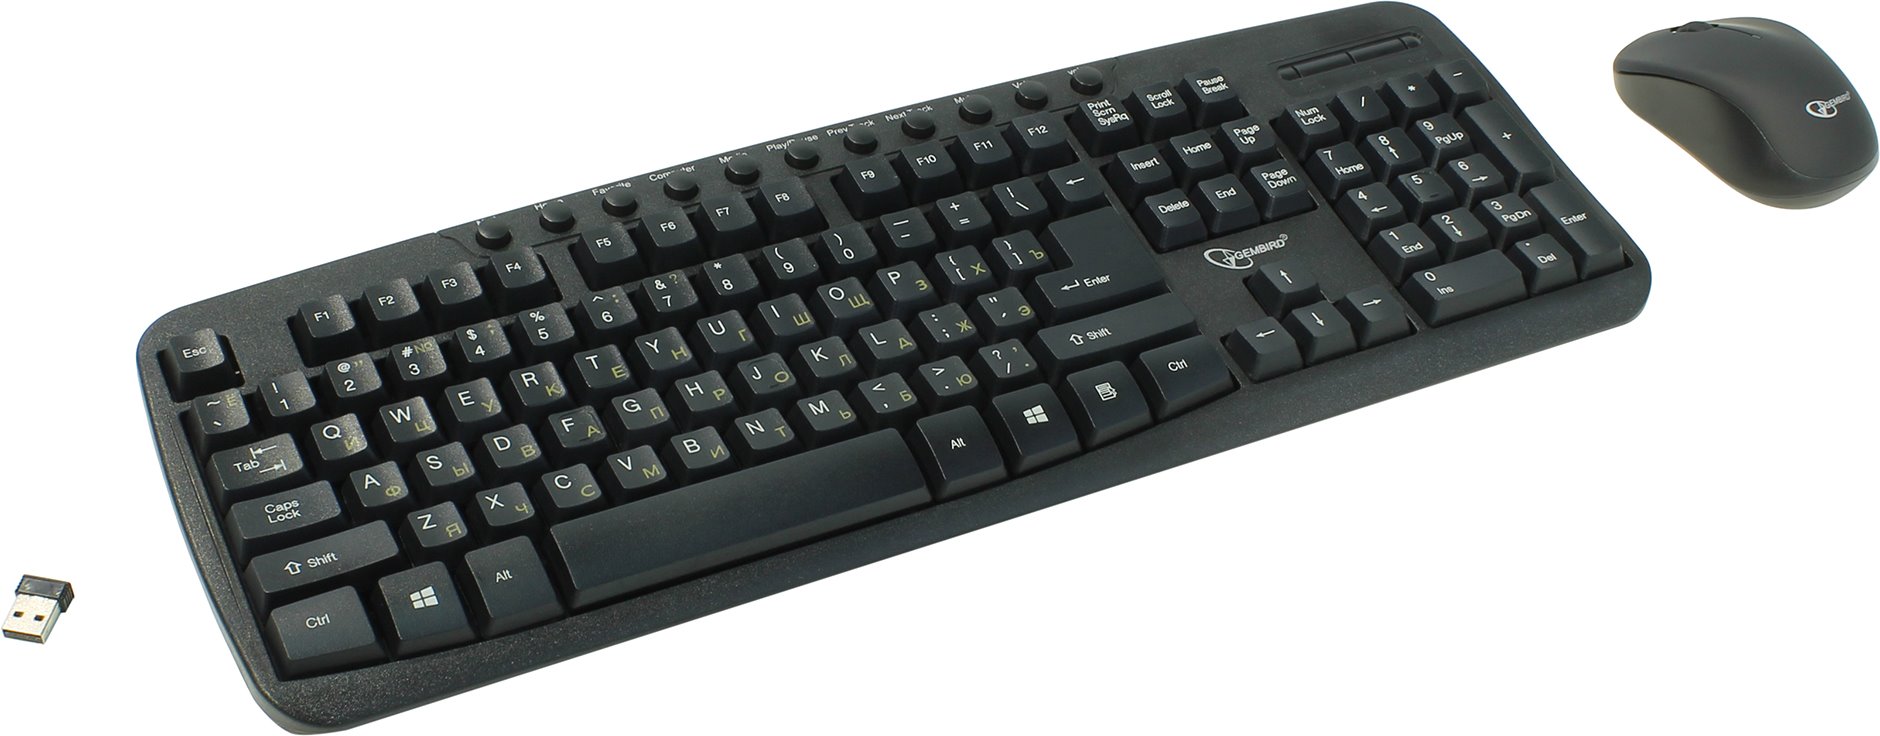 Клавиатура + мышь Gembird KBS-7003, беспроводные, USB